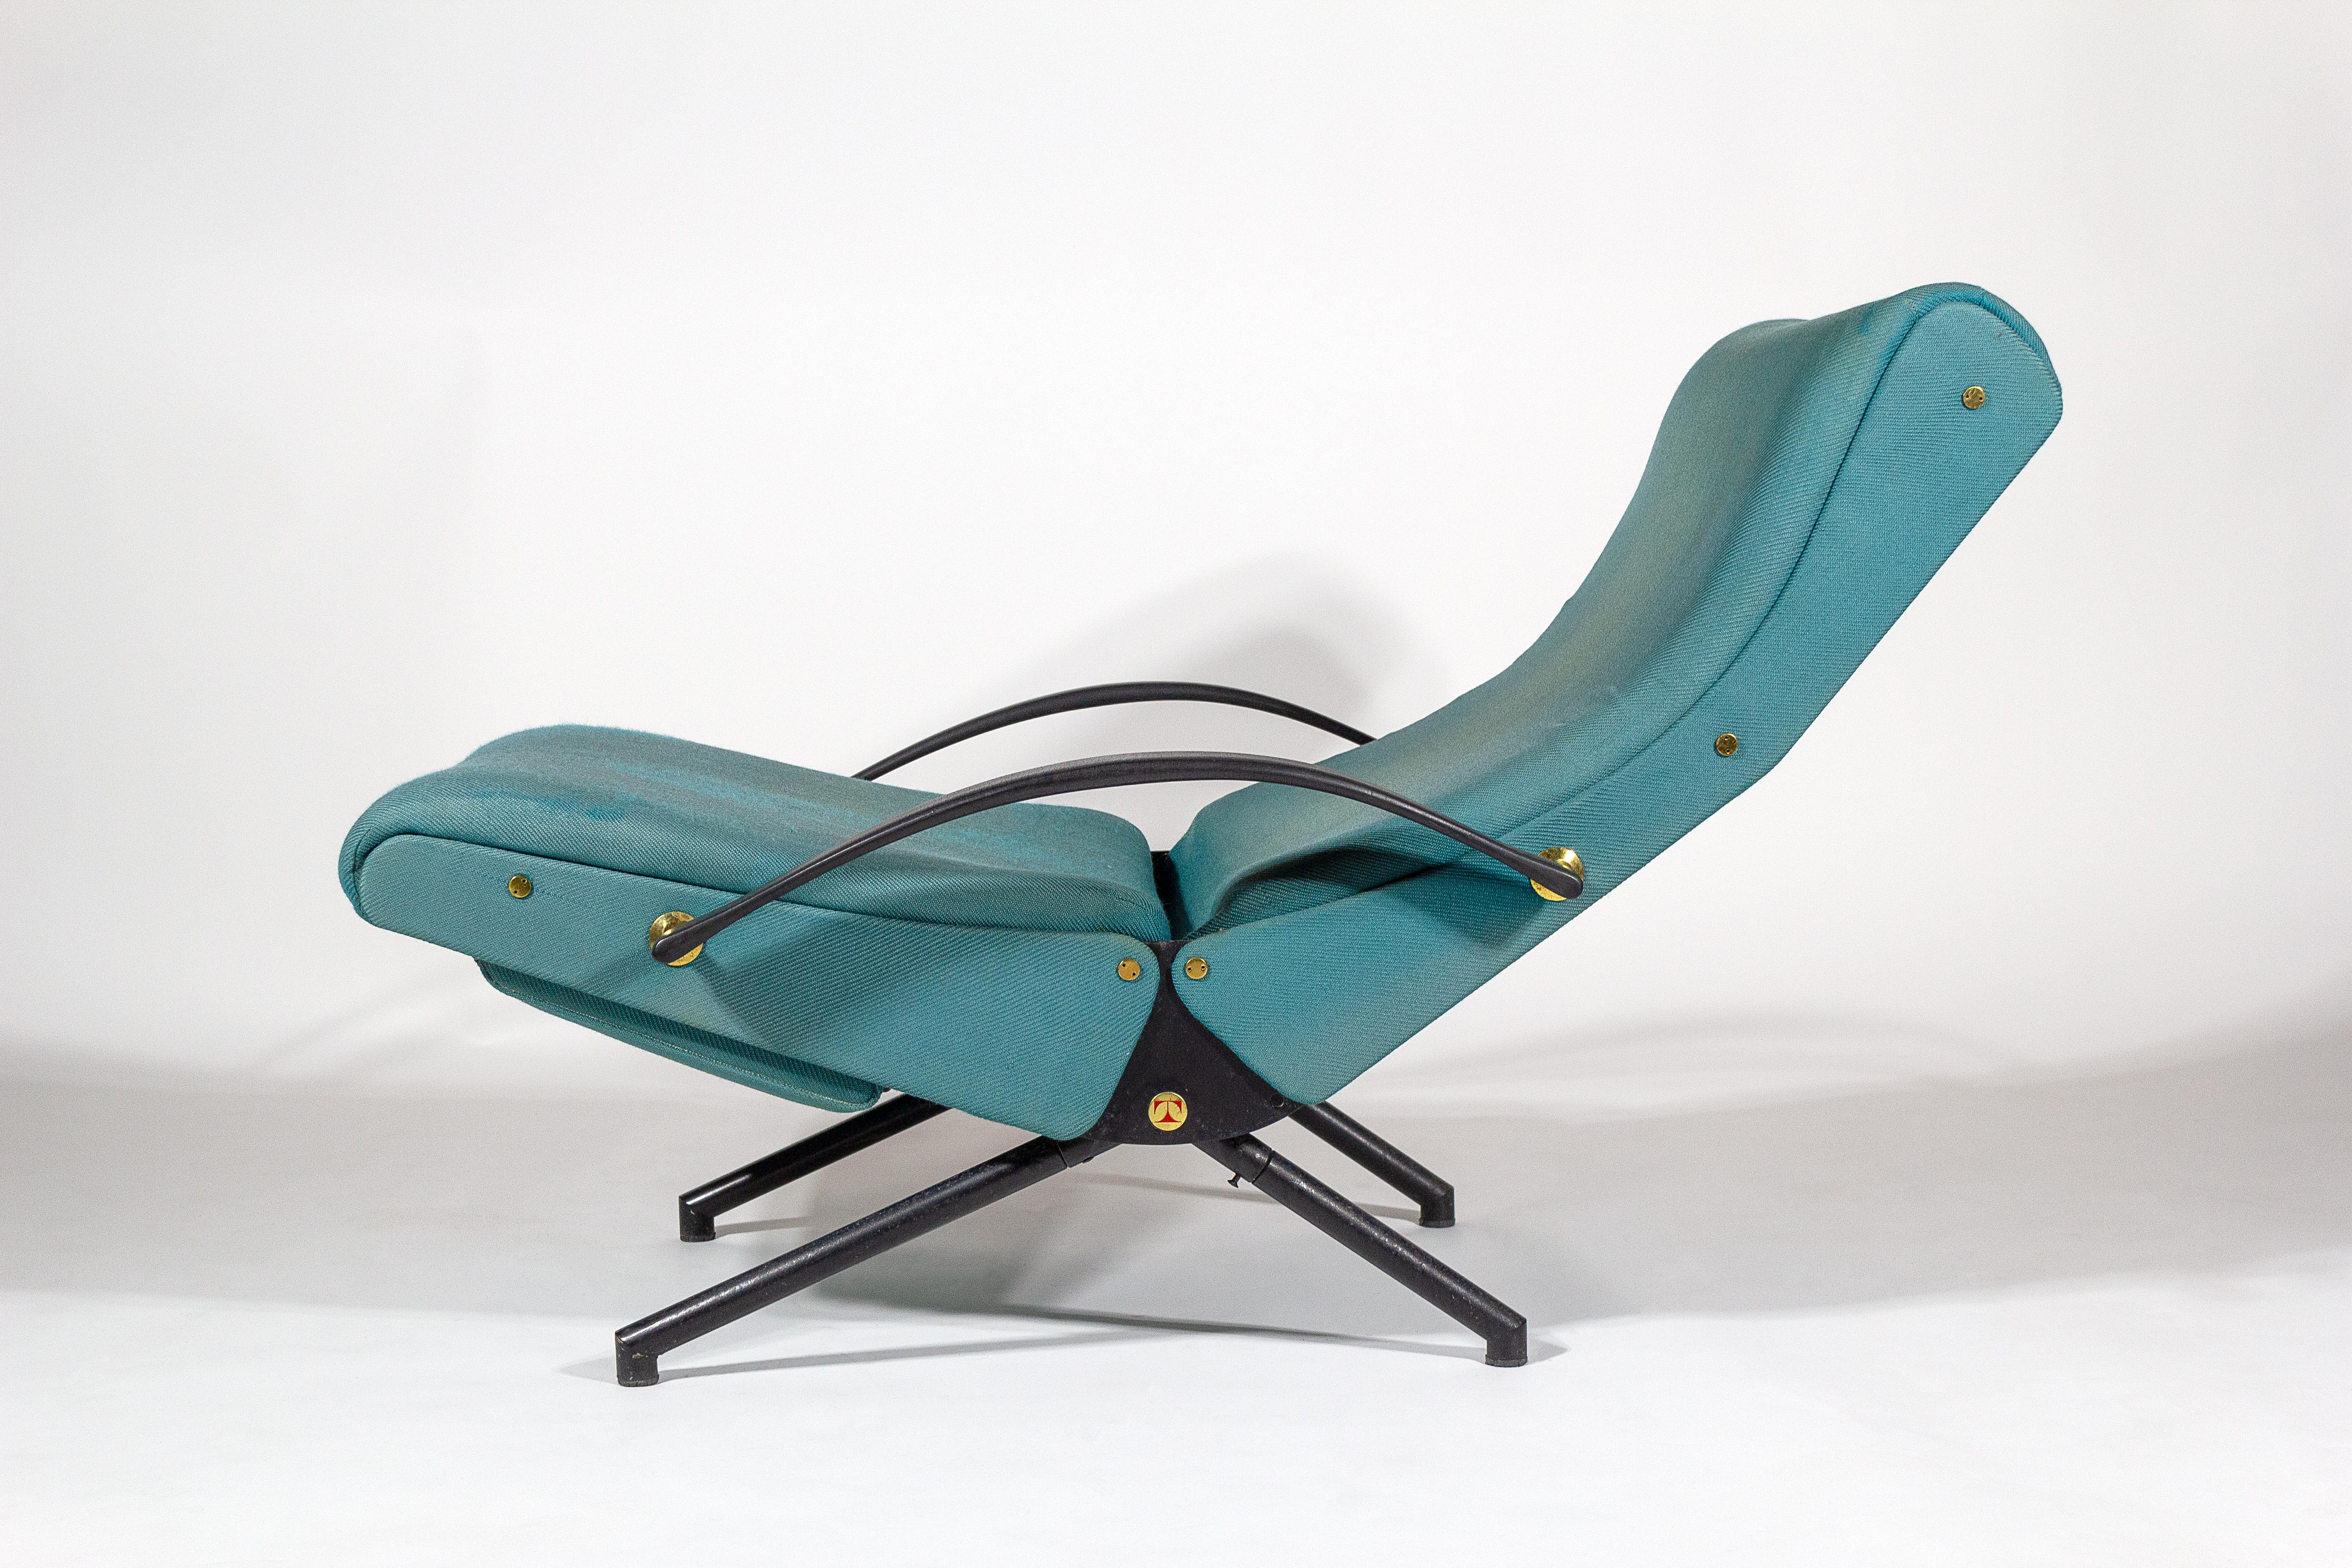 Chaise longue P40 de production précoce, conçue par Osvaldo Borsani pour Tecno, Italie, années 1950. Le salon, doté d'un repose-pieds extensible, est conçu pour s'incliner et peut être réglé dans plusieurs positions. 

Osvaldo Borsani, architecte